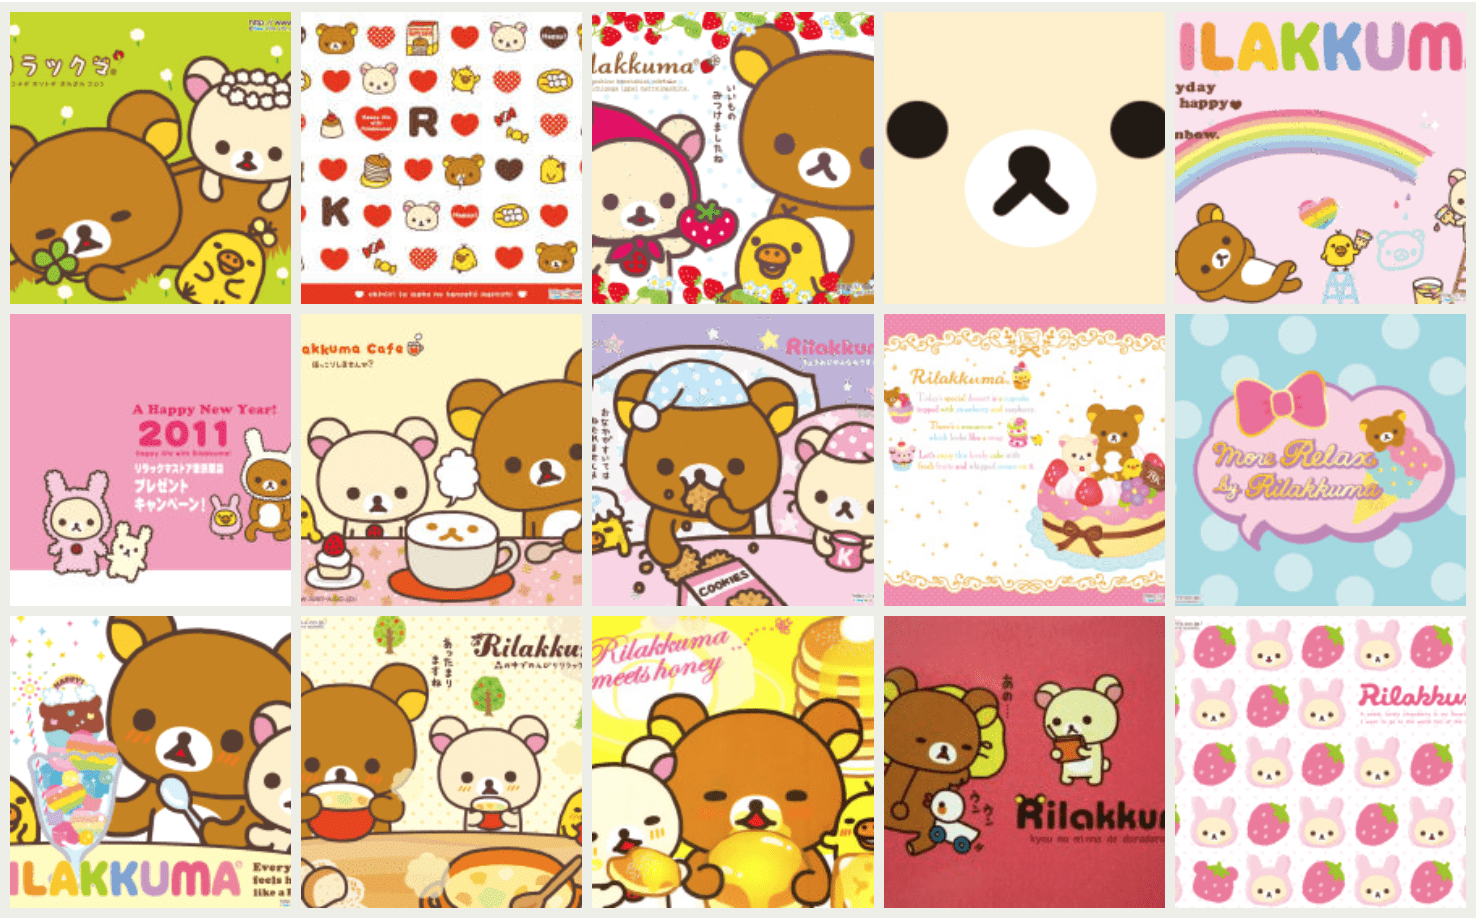 14 kawaii Rilakkuma desktop wallpapers! For more kawaii desktop wallpaper, check out www.CuteWallpapers.site! #kawaii #wallpaper #cute #rilakkuma #san-x #japanese #cutewallpapers